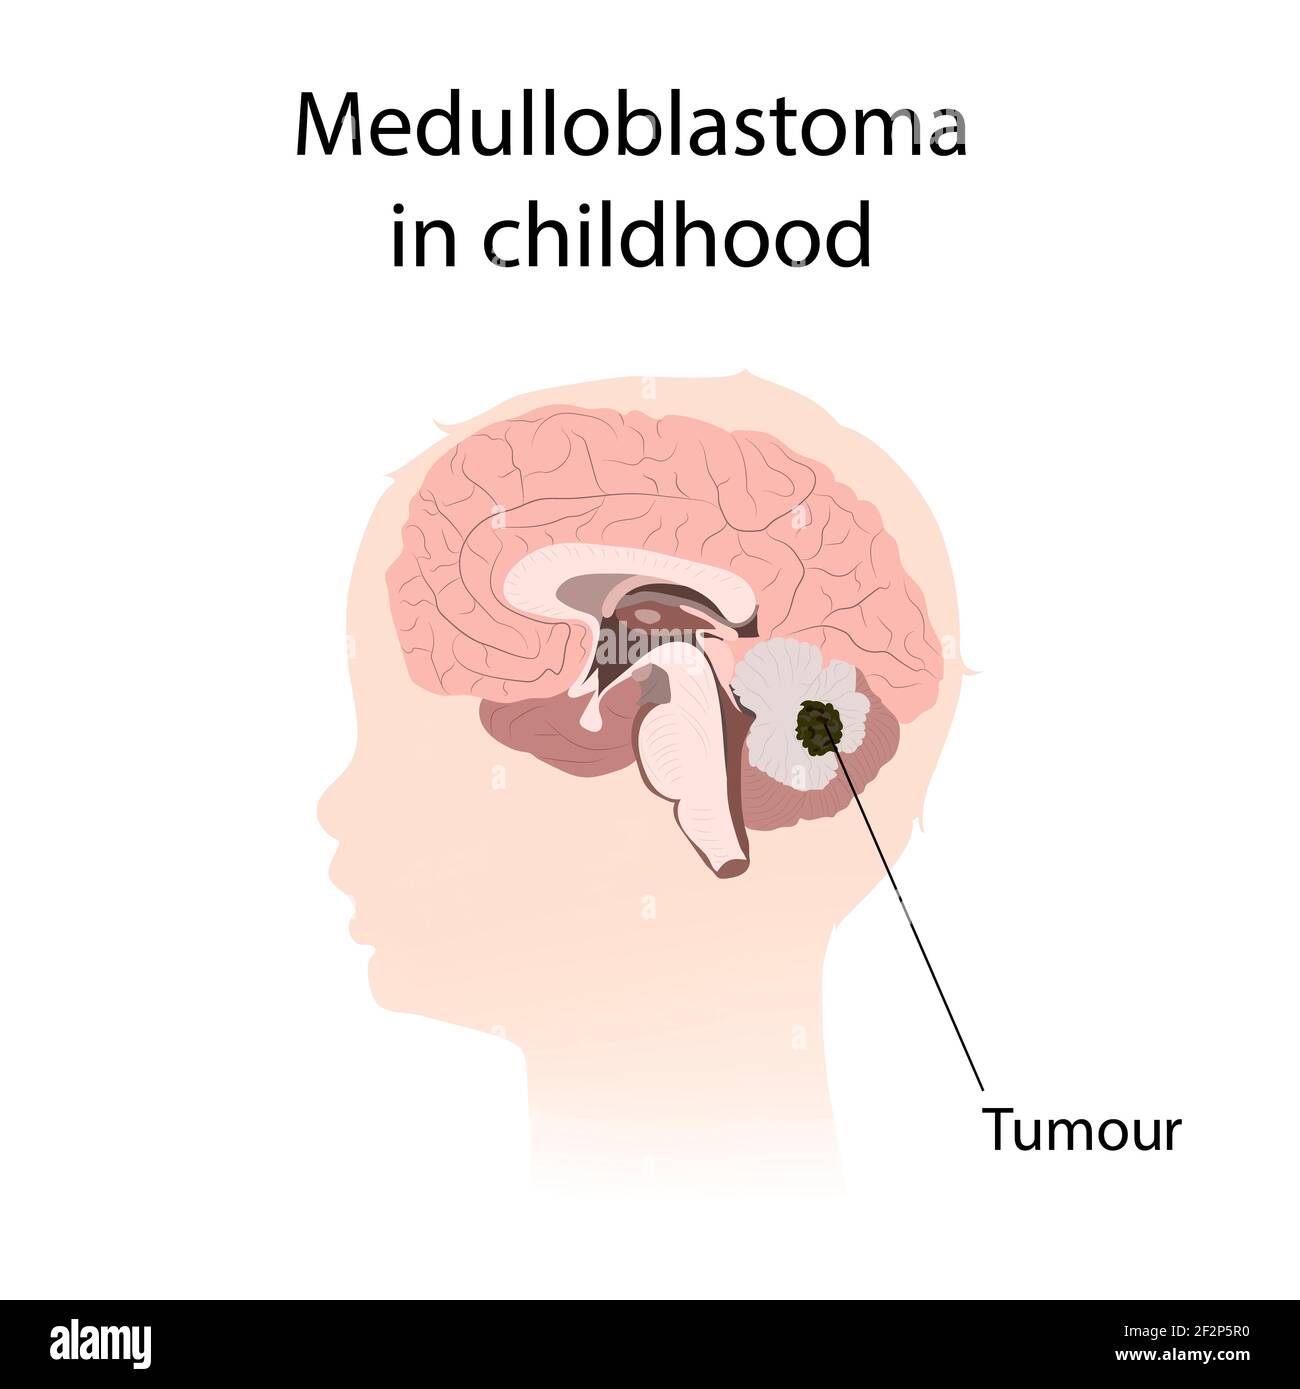 Medulloblastoma in childhood, illustration Stock Photo